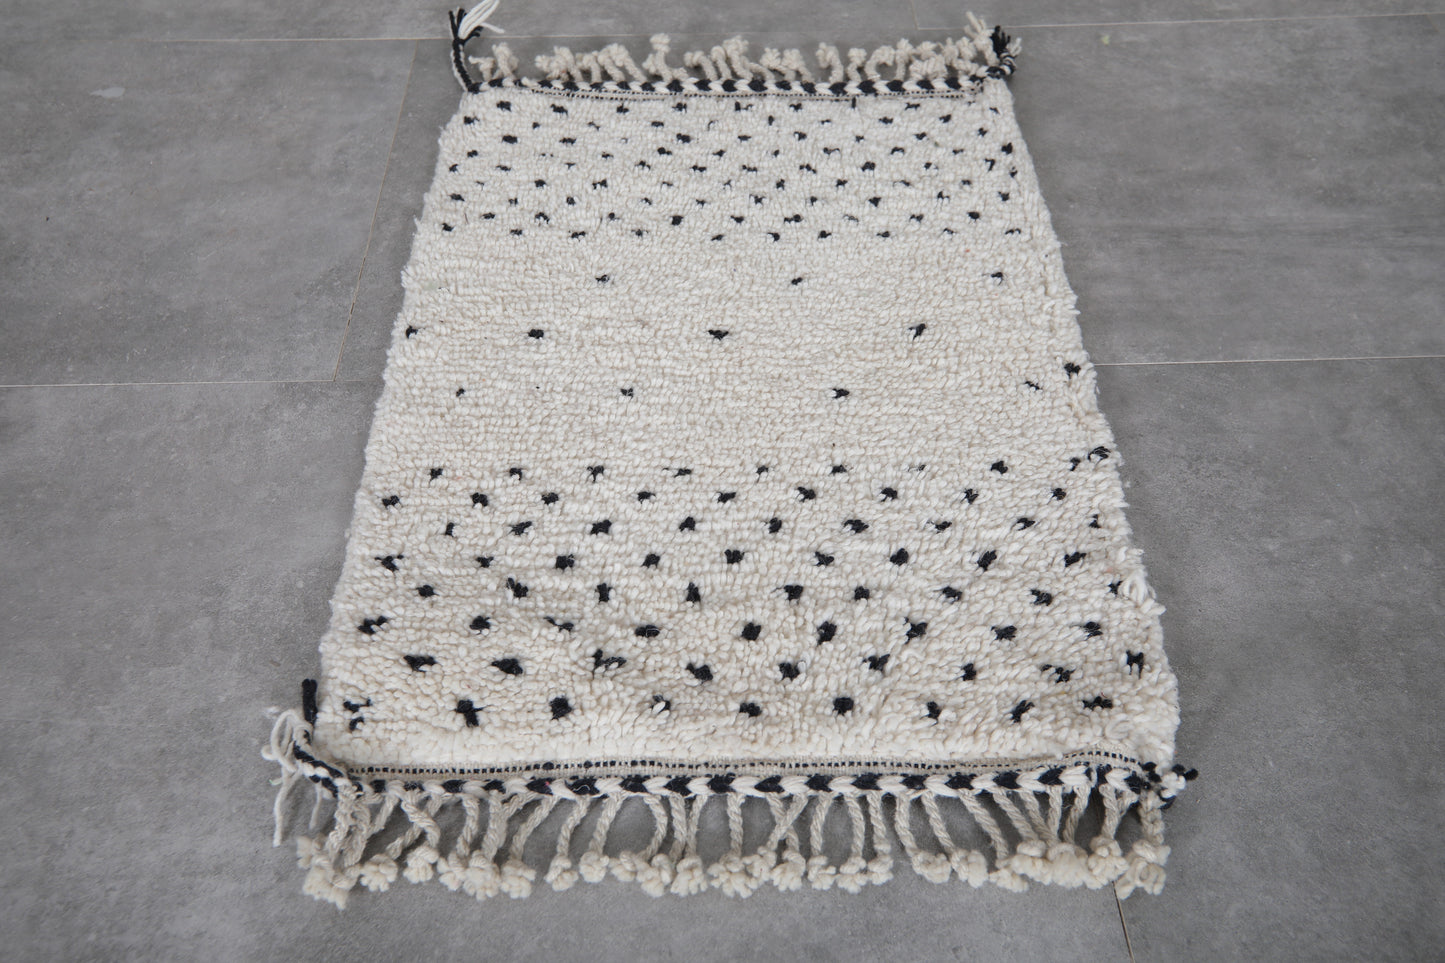 Moroccan rug 2 X 2.9 Feet